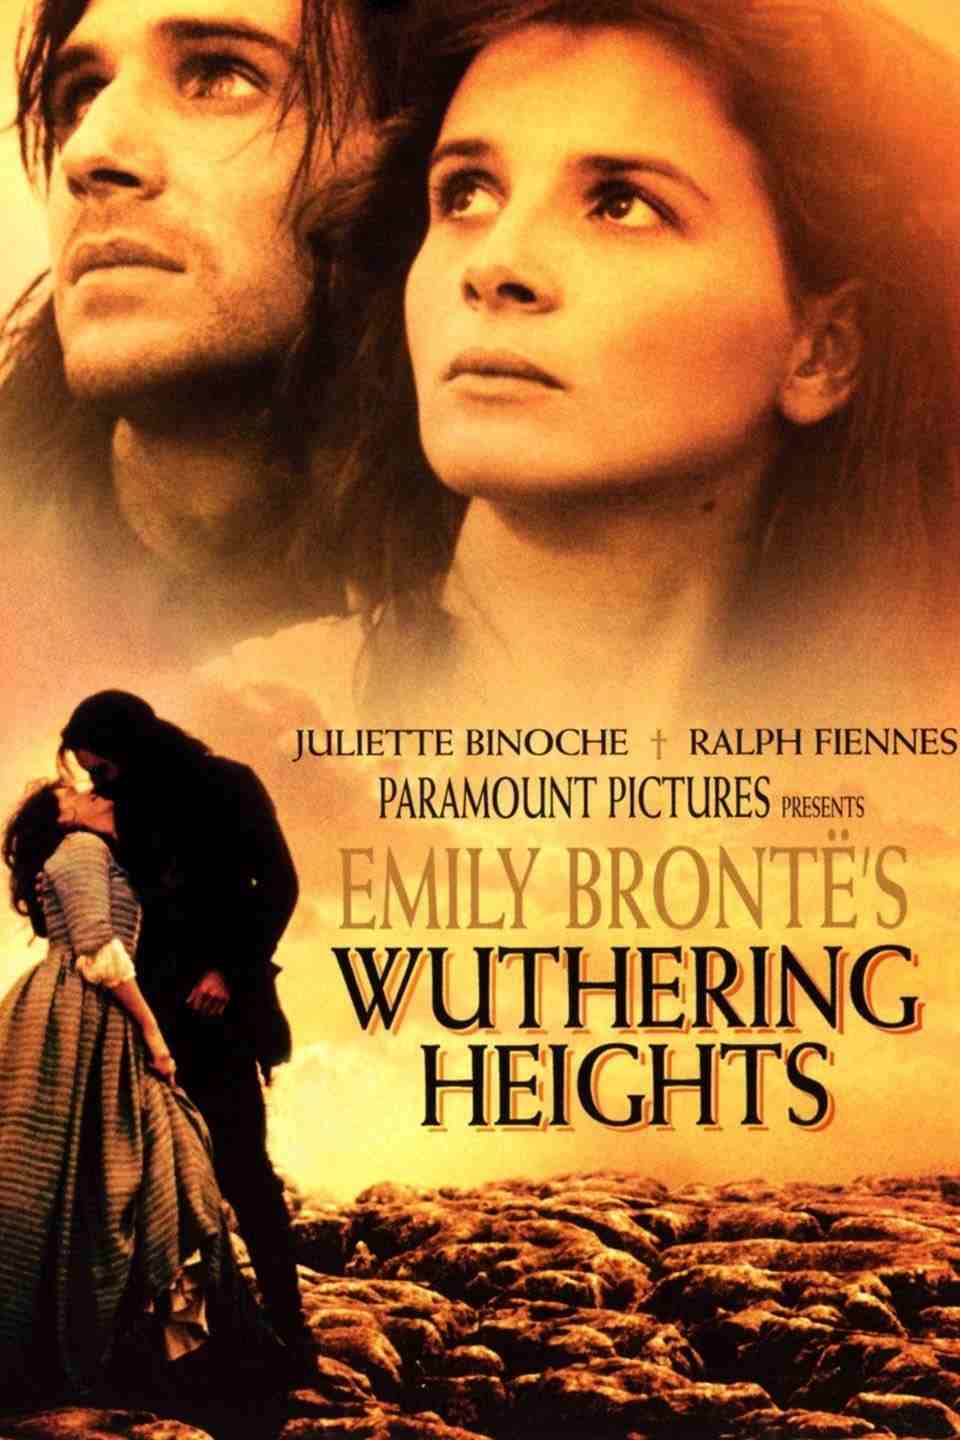 ดูซีรีย์ Wuthering Heights (1992) วัทเตอริง ไฮ้ทส์ ซับไทย HD เต็มเรื่อง ดูฟรี